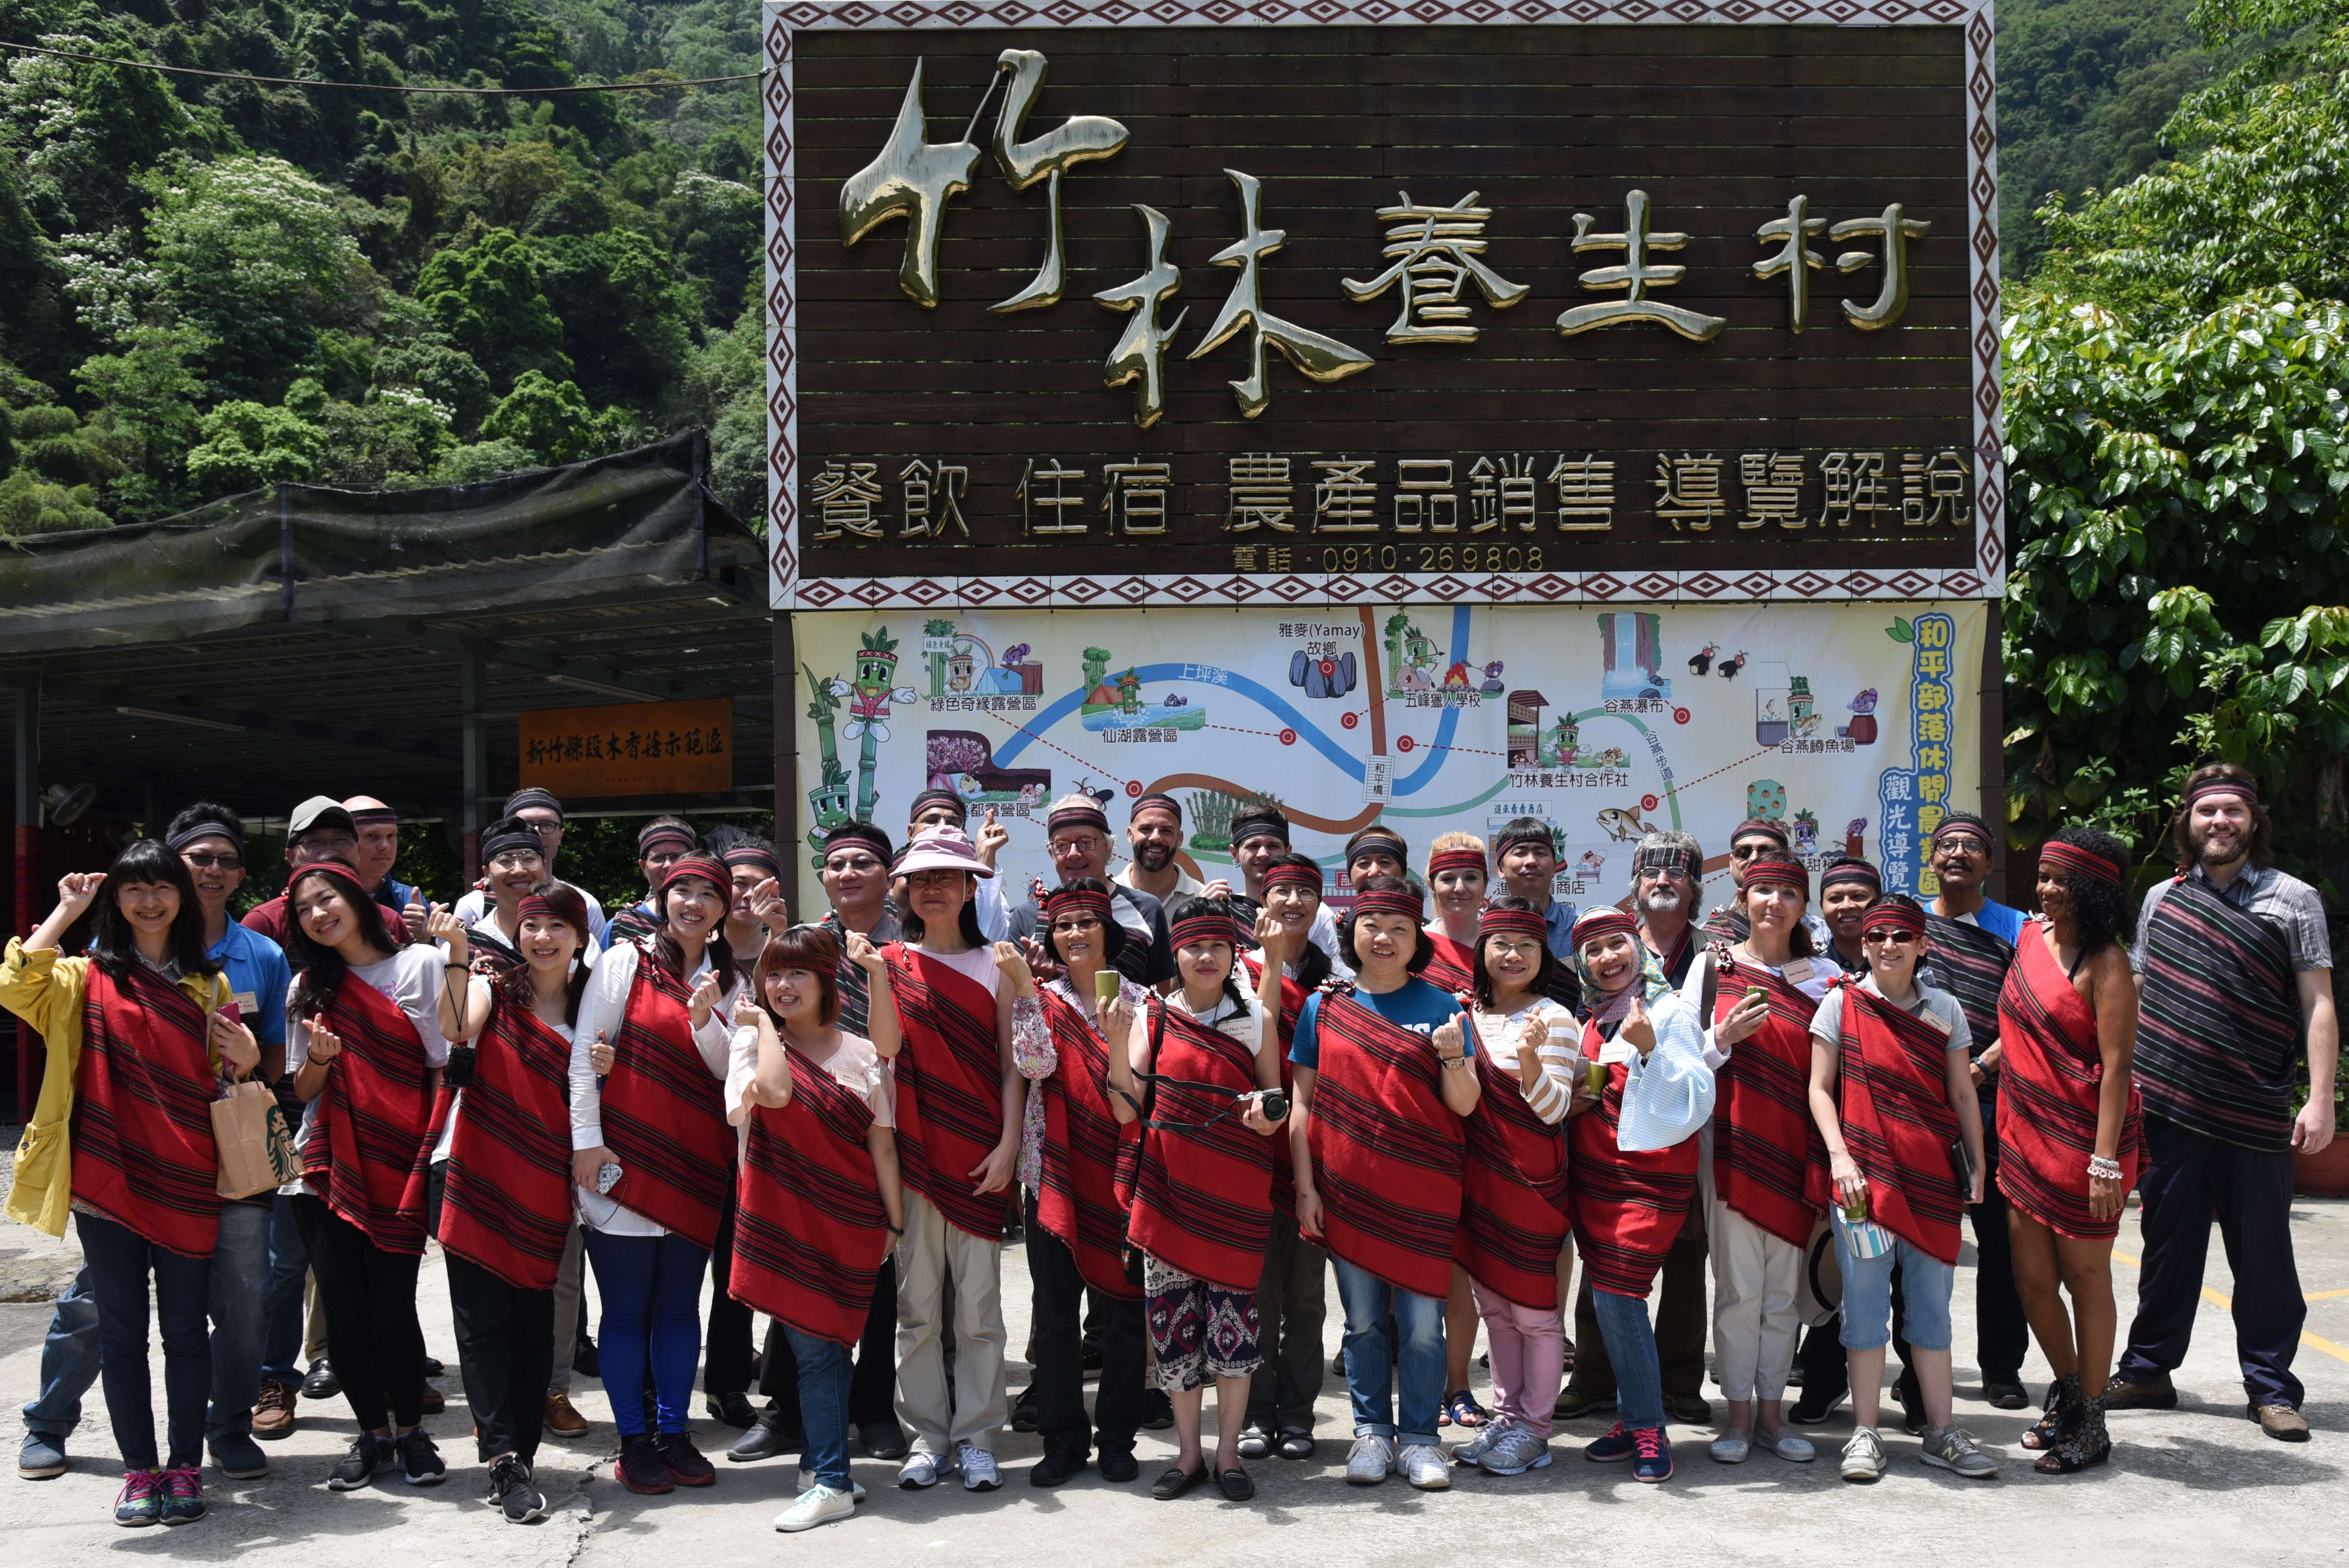 外交部「臺灣獎助金」學人參訪新竹五峰與北埔  探索原民客家風